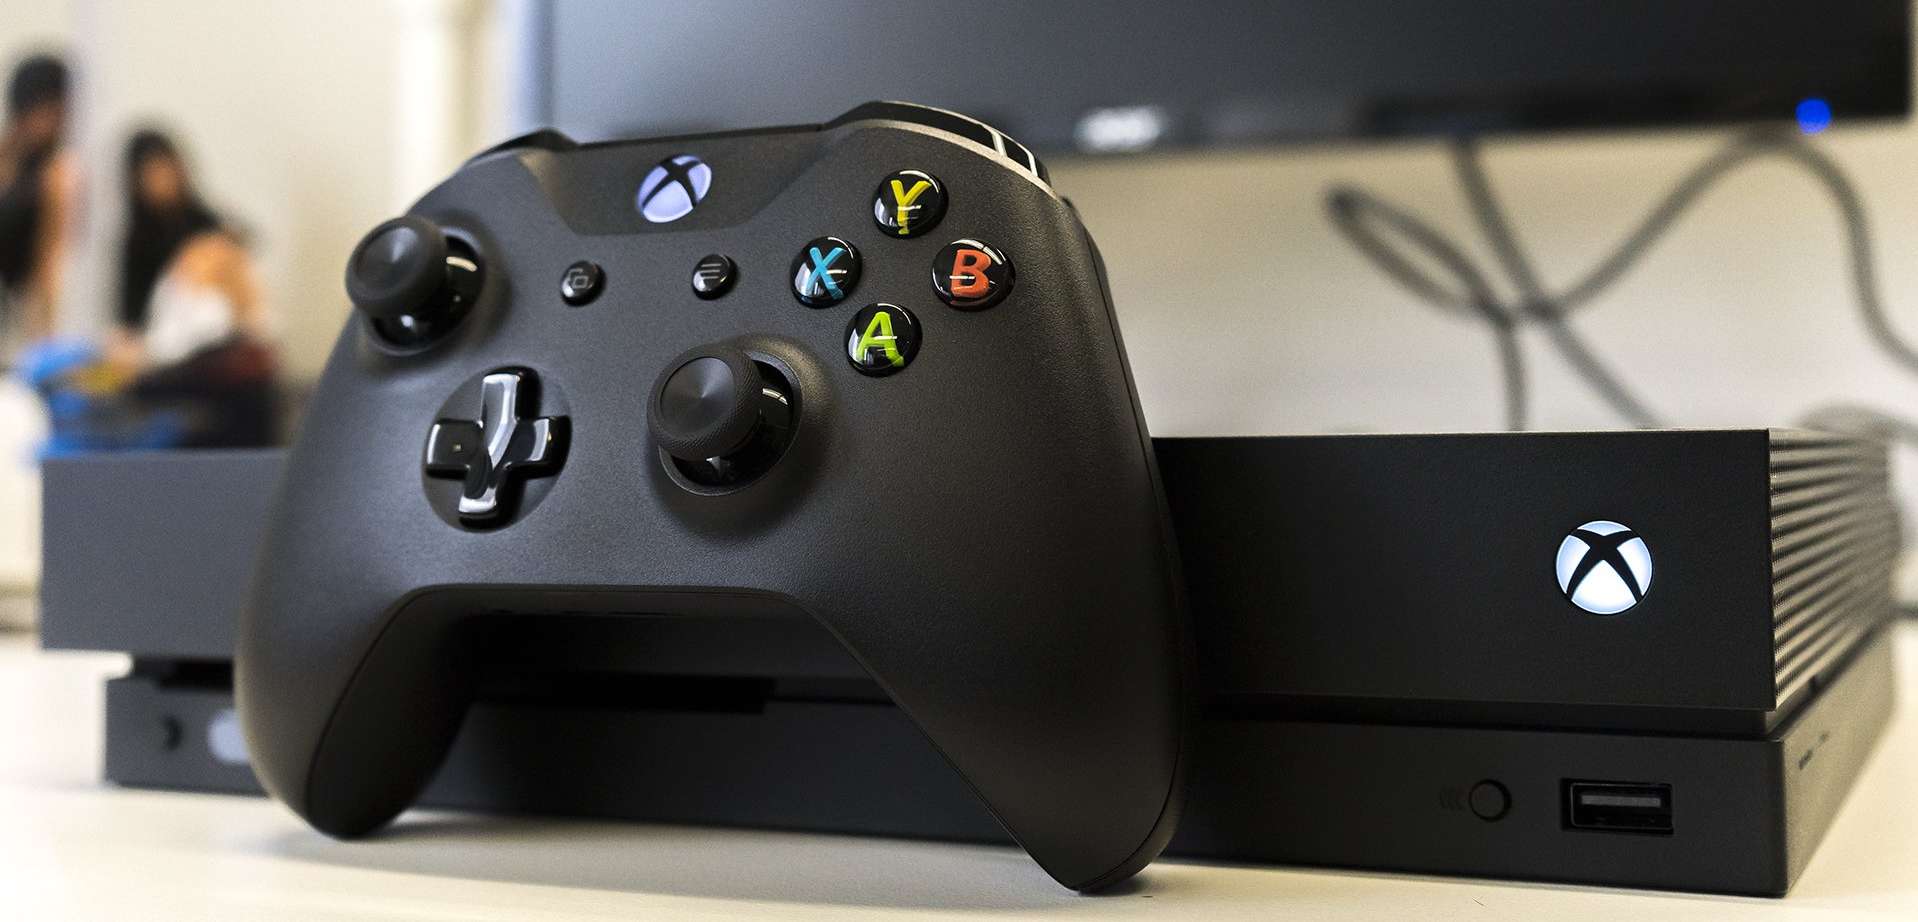 Procesor najsłabszym punktem Xbox One X. Autorzy ARK: Survival Evolved mówią o potencjale nowej konsoli